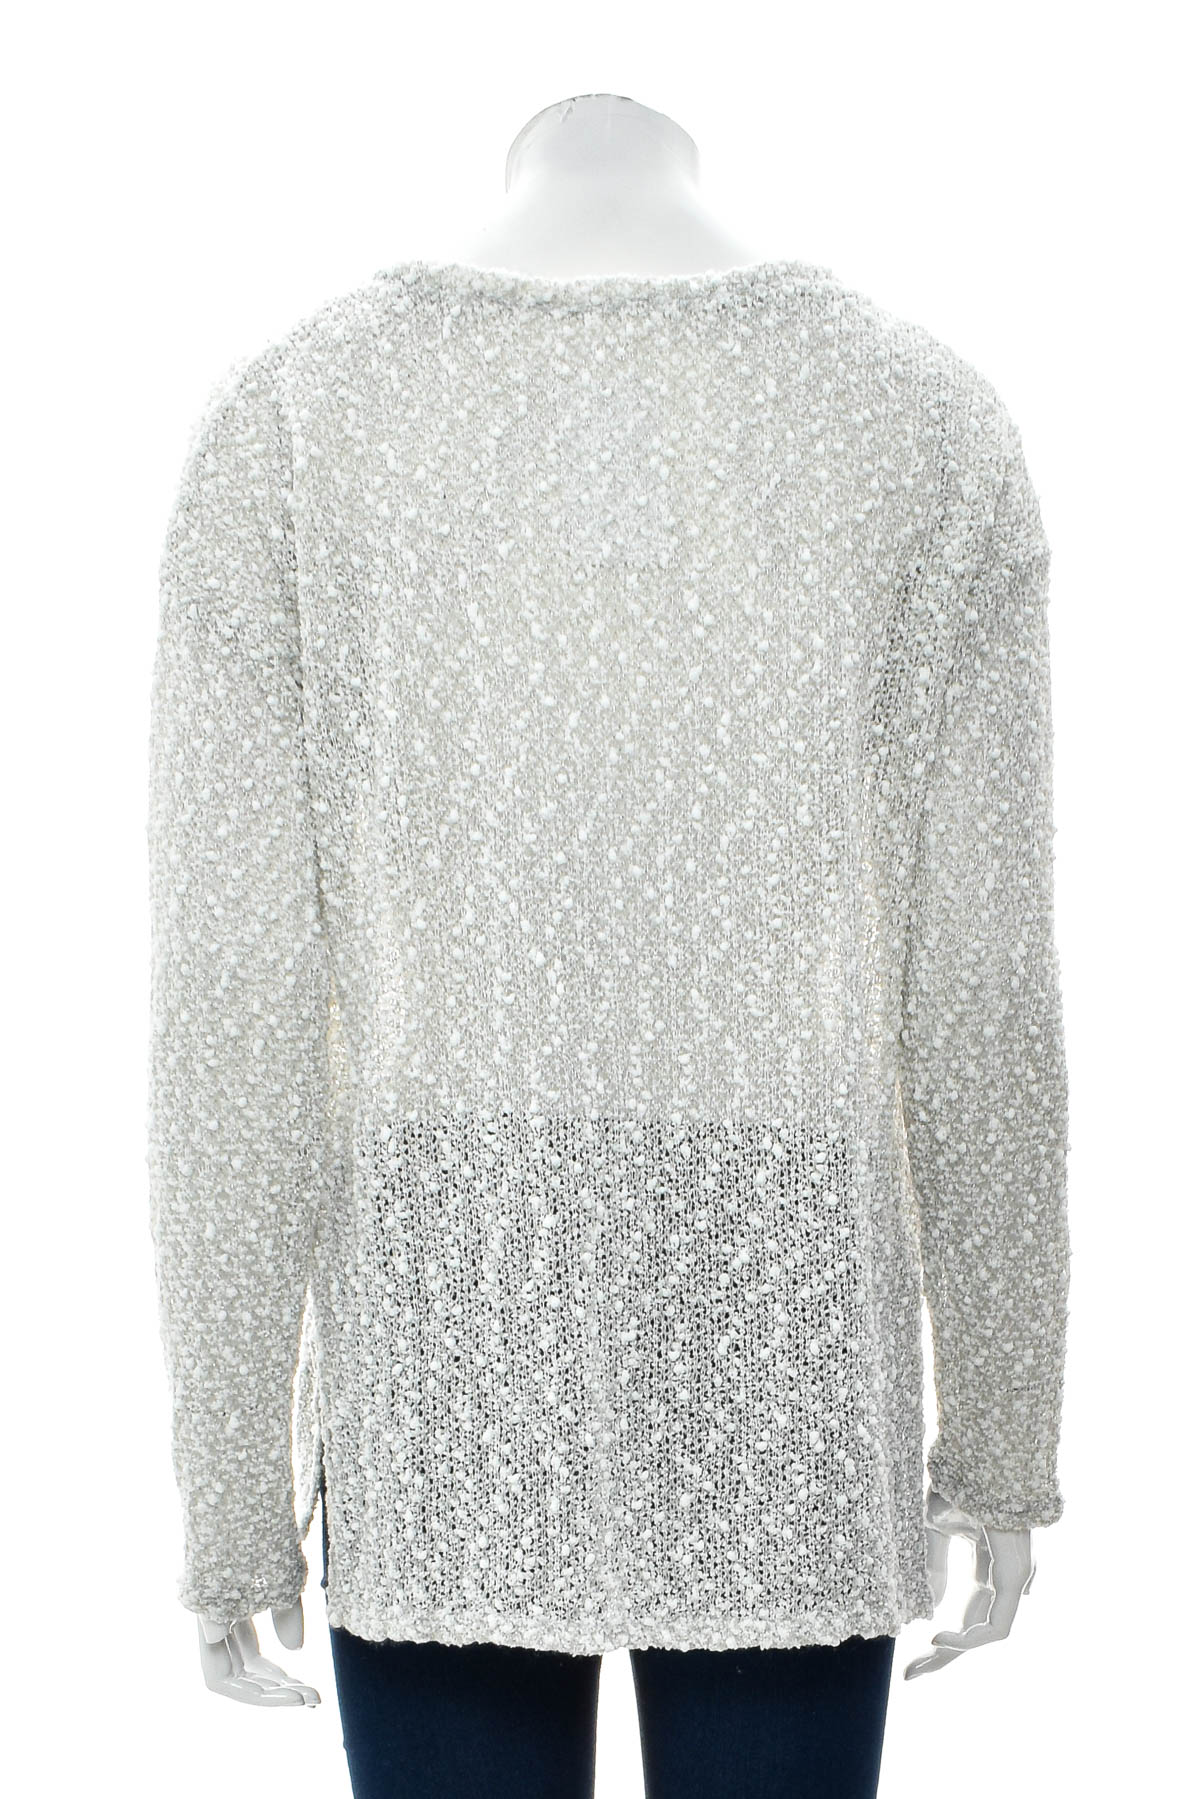 Women's sweater - Aeropostale - 1